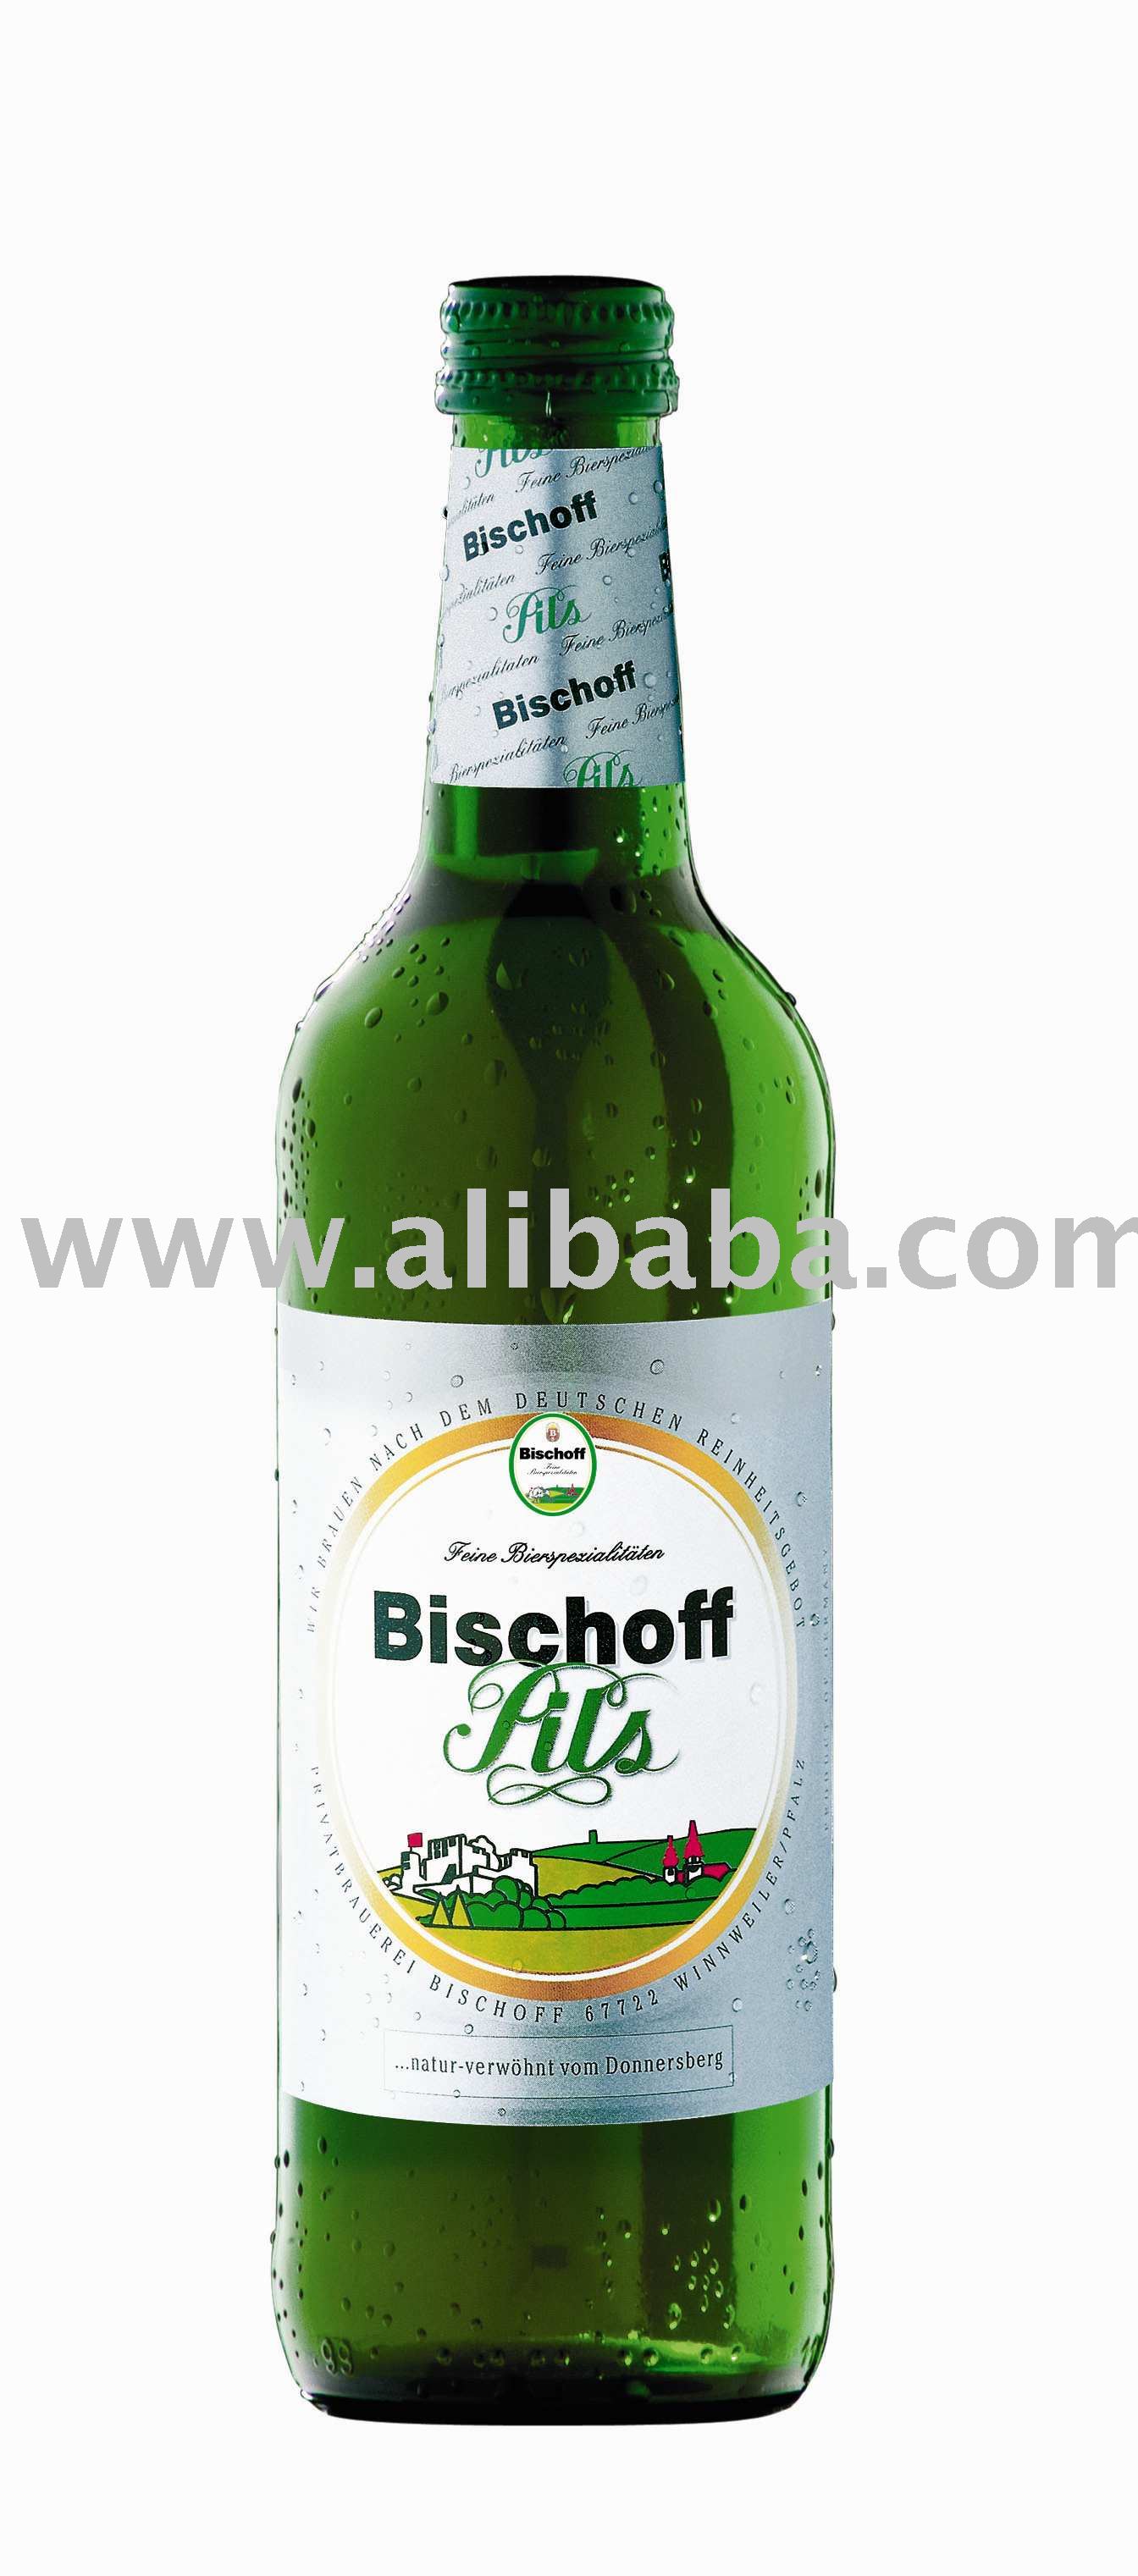 Bischoff Pils beer